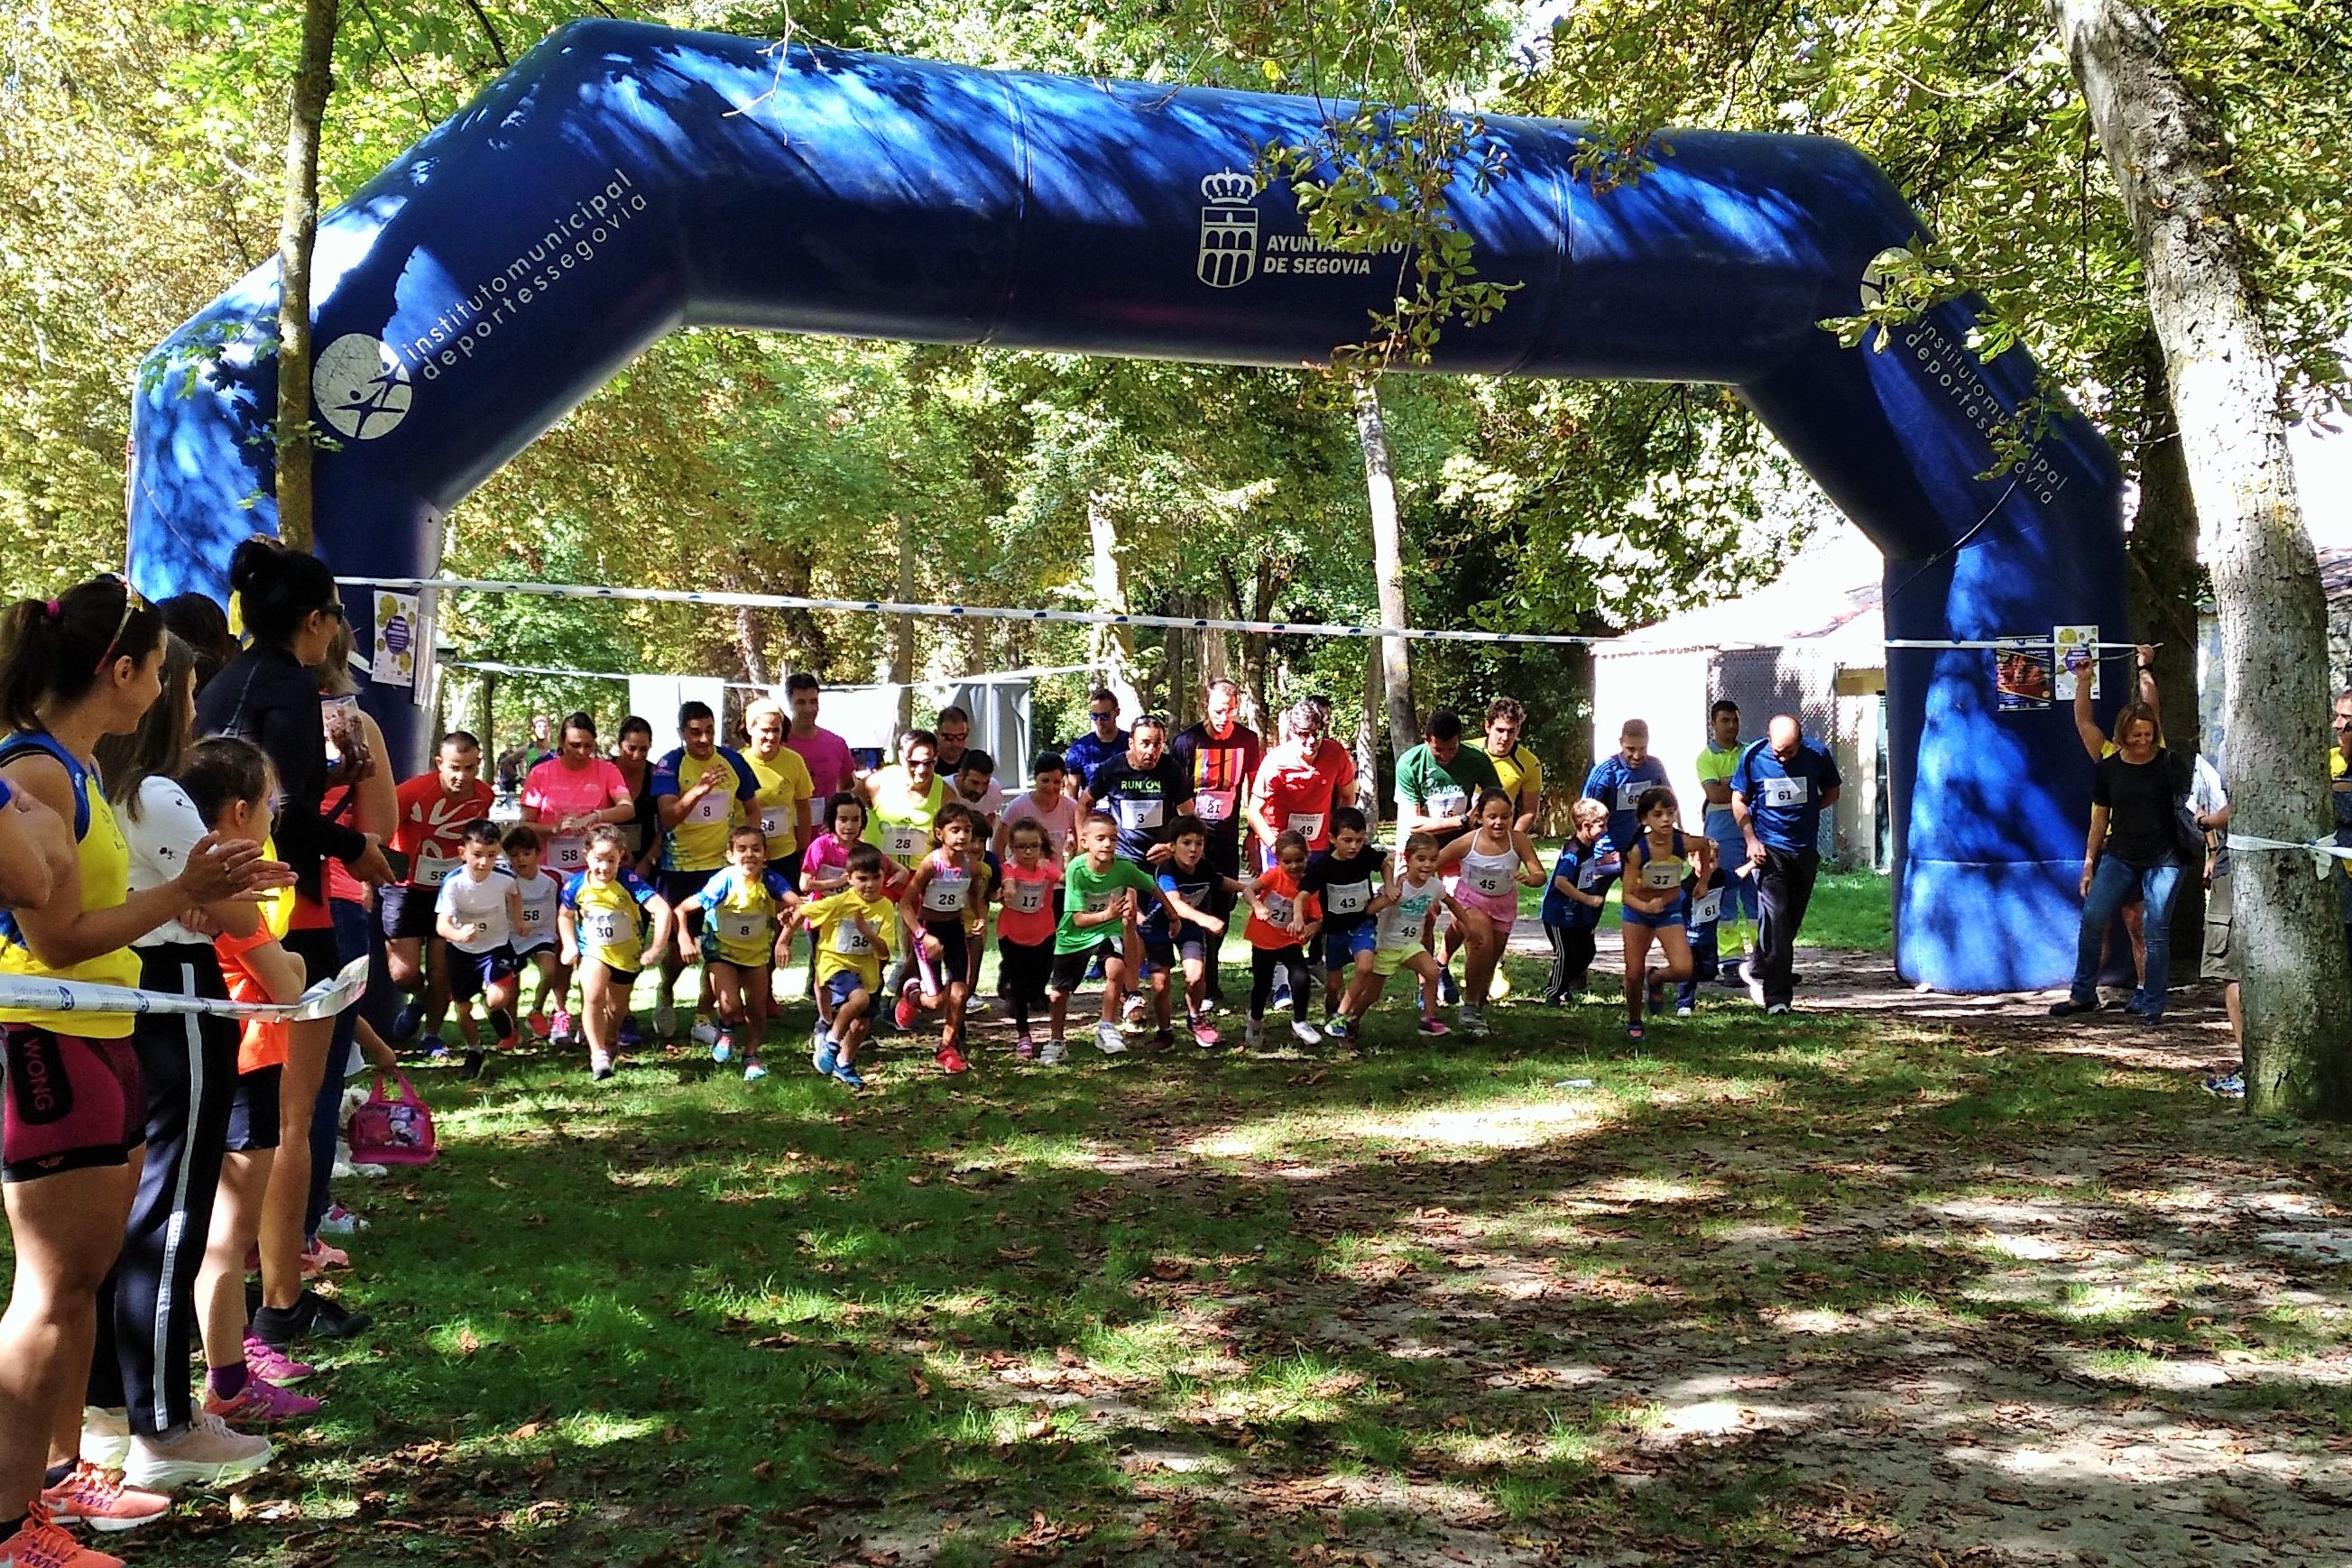 Un año más el Club de Atletismo Sporting Segovia organizó la carrera Correr en Familia